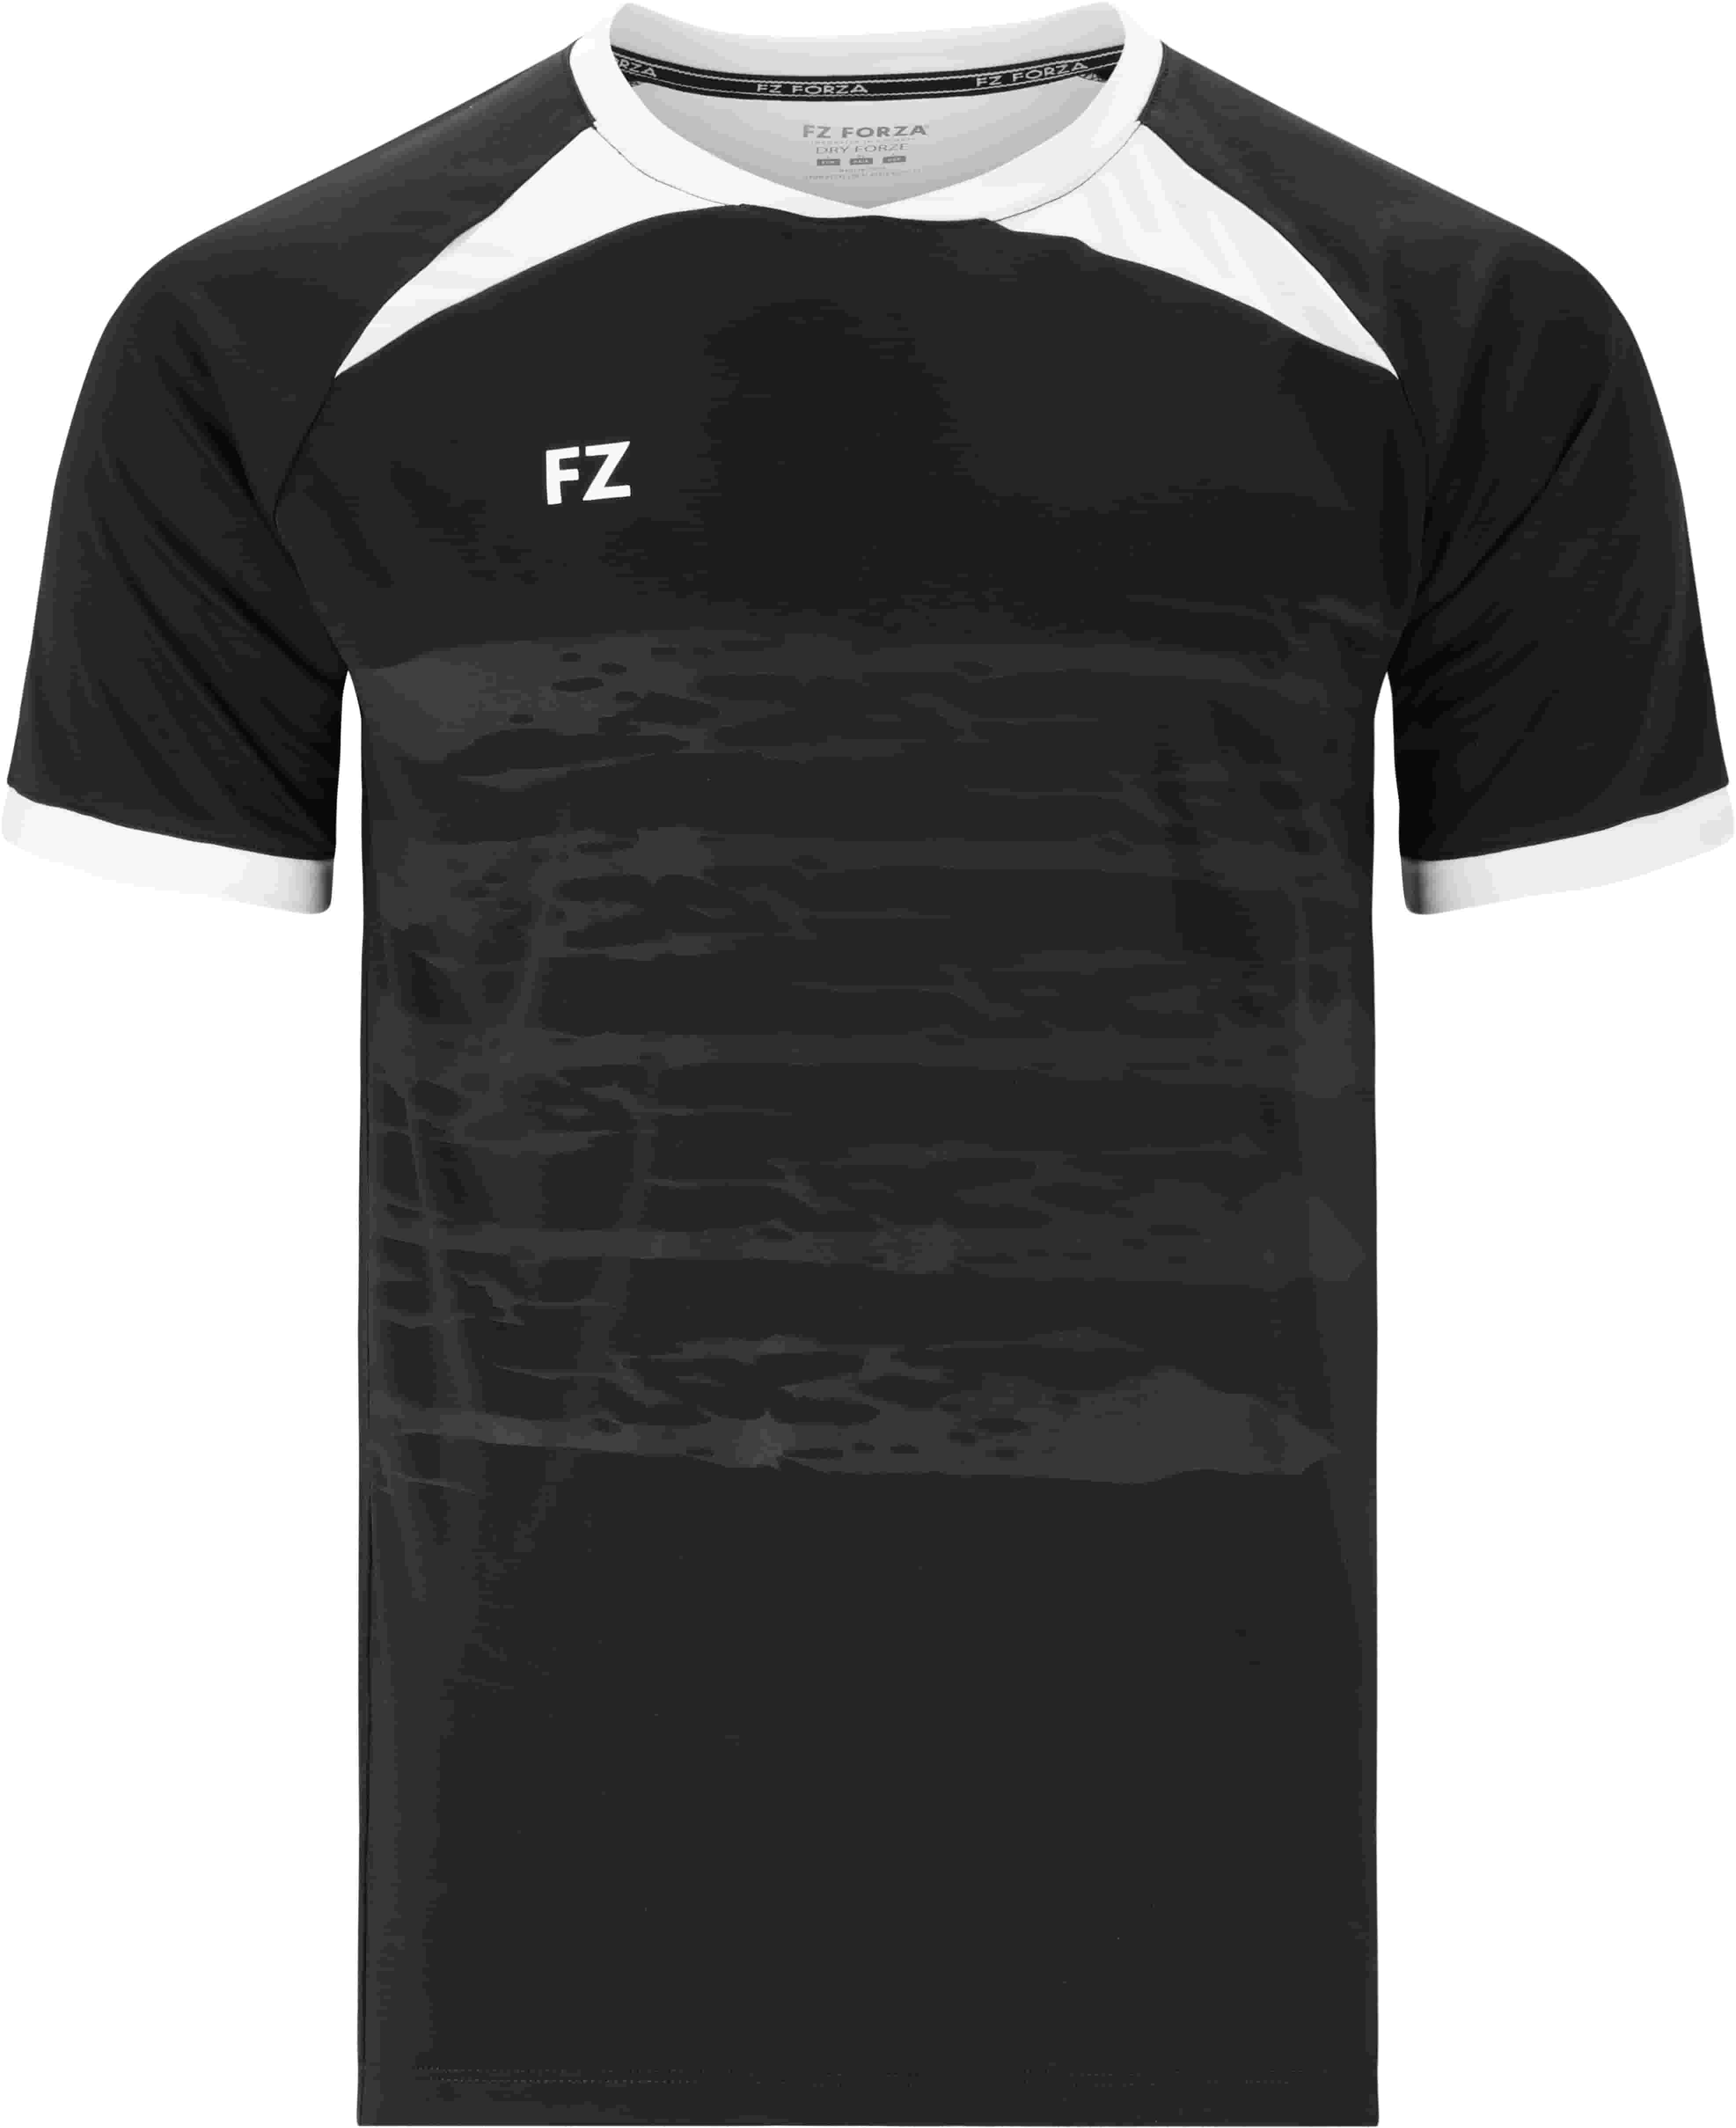 FZ FORZA Agentin M T-Shirt - Schwarz 10